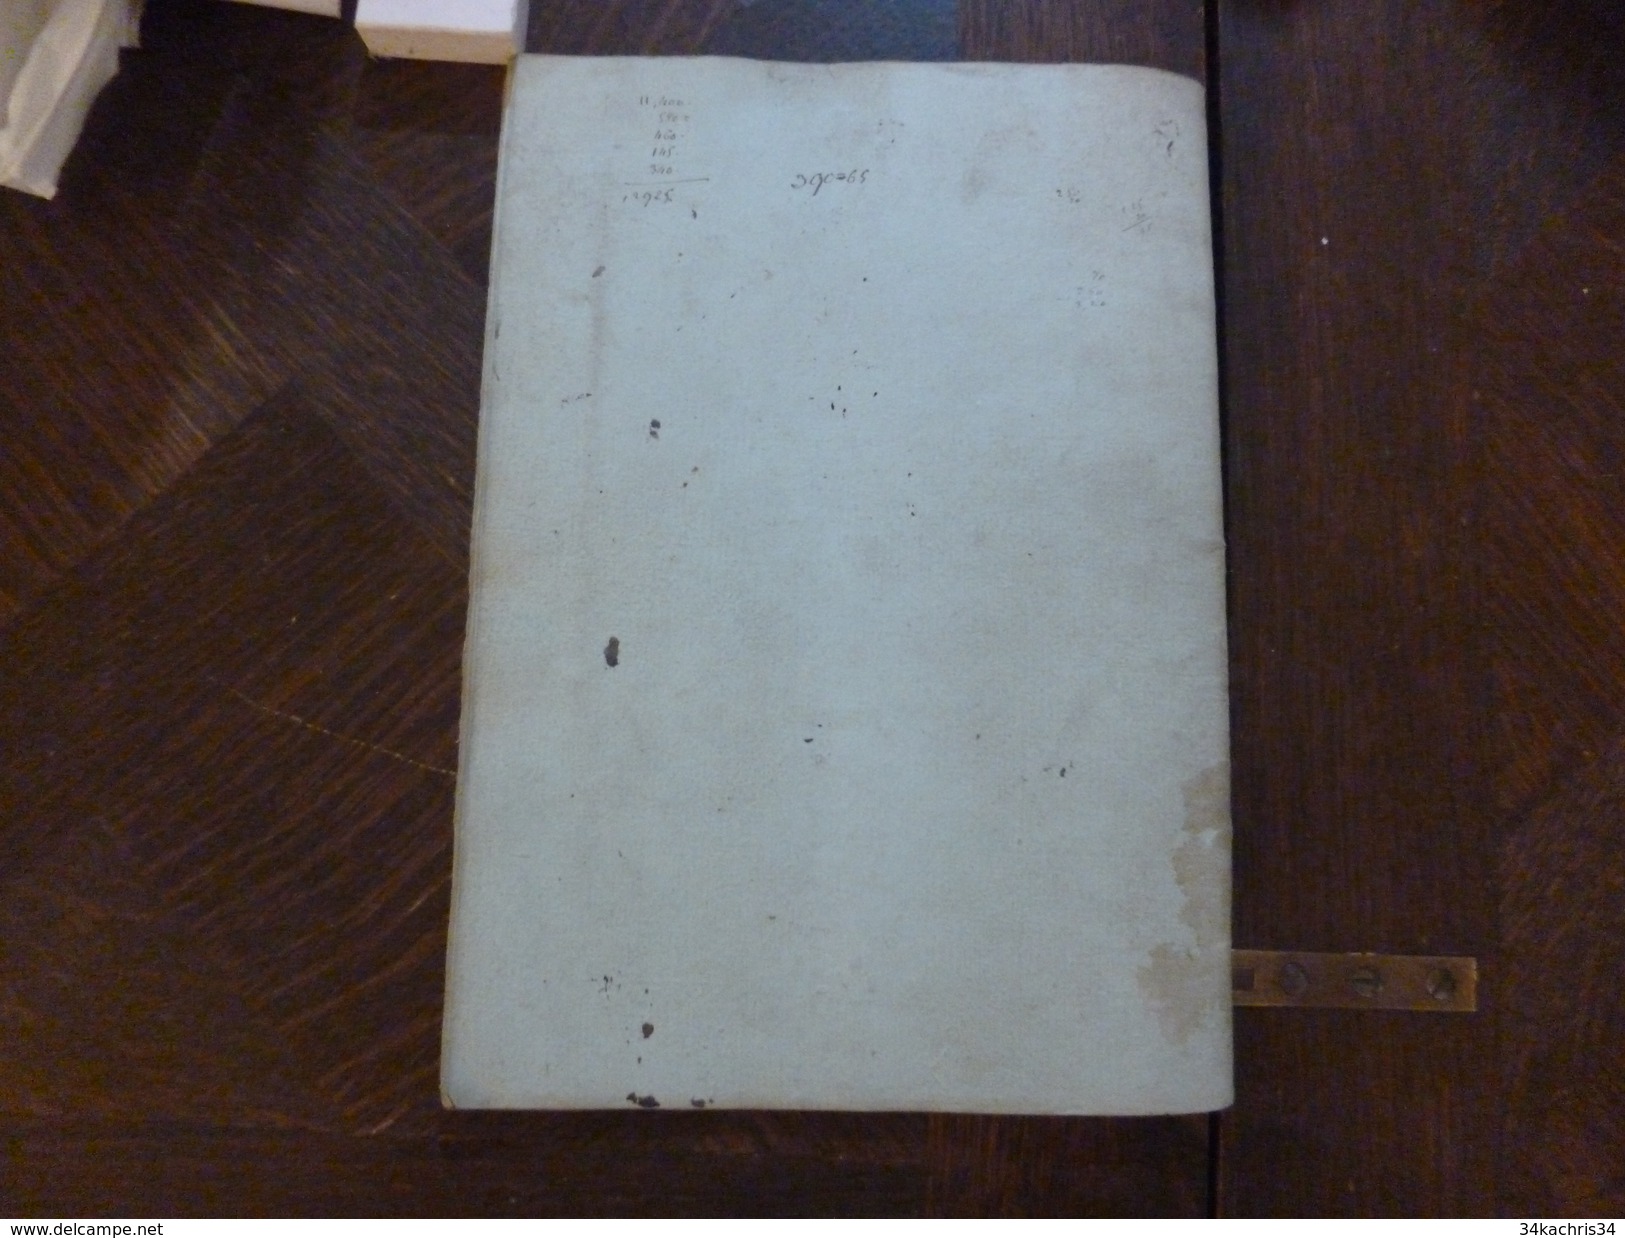 Année 1830 Livre de compte manuscrit de Barthélémy Teulon notaire à Valleraugue Gard 35 pages